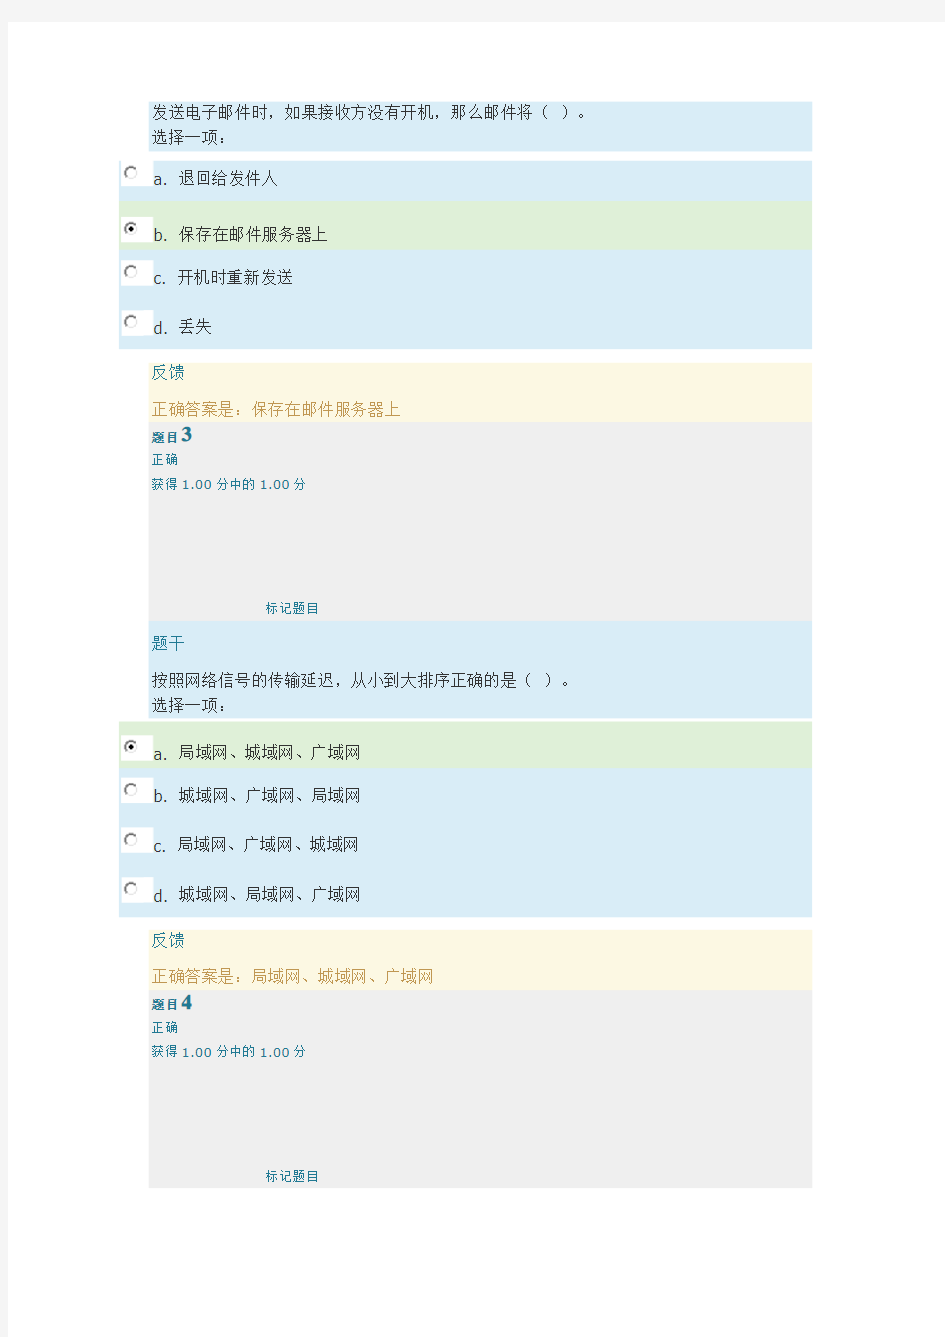 上海交通大学继续教育学院计算机应用基础(二)第四次作业 计算机网络基础-满分